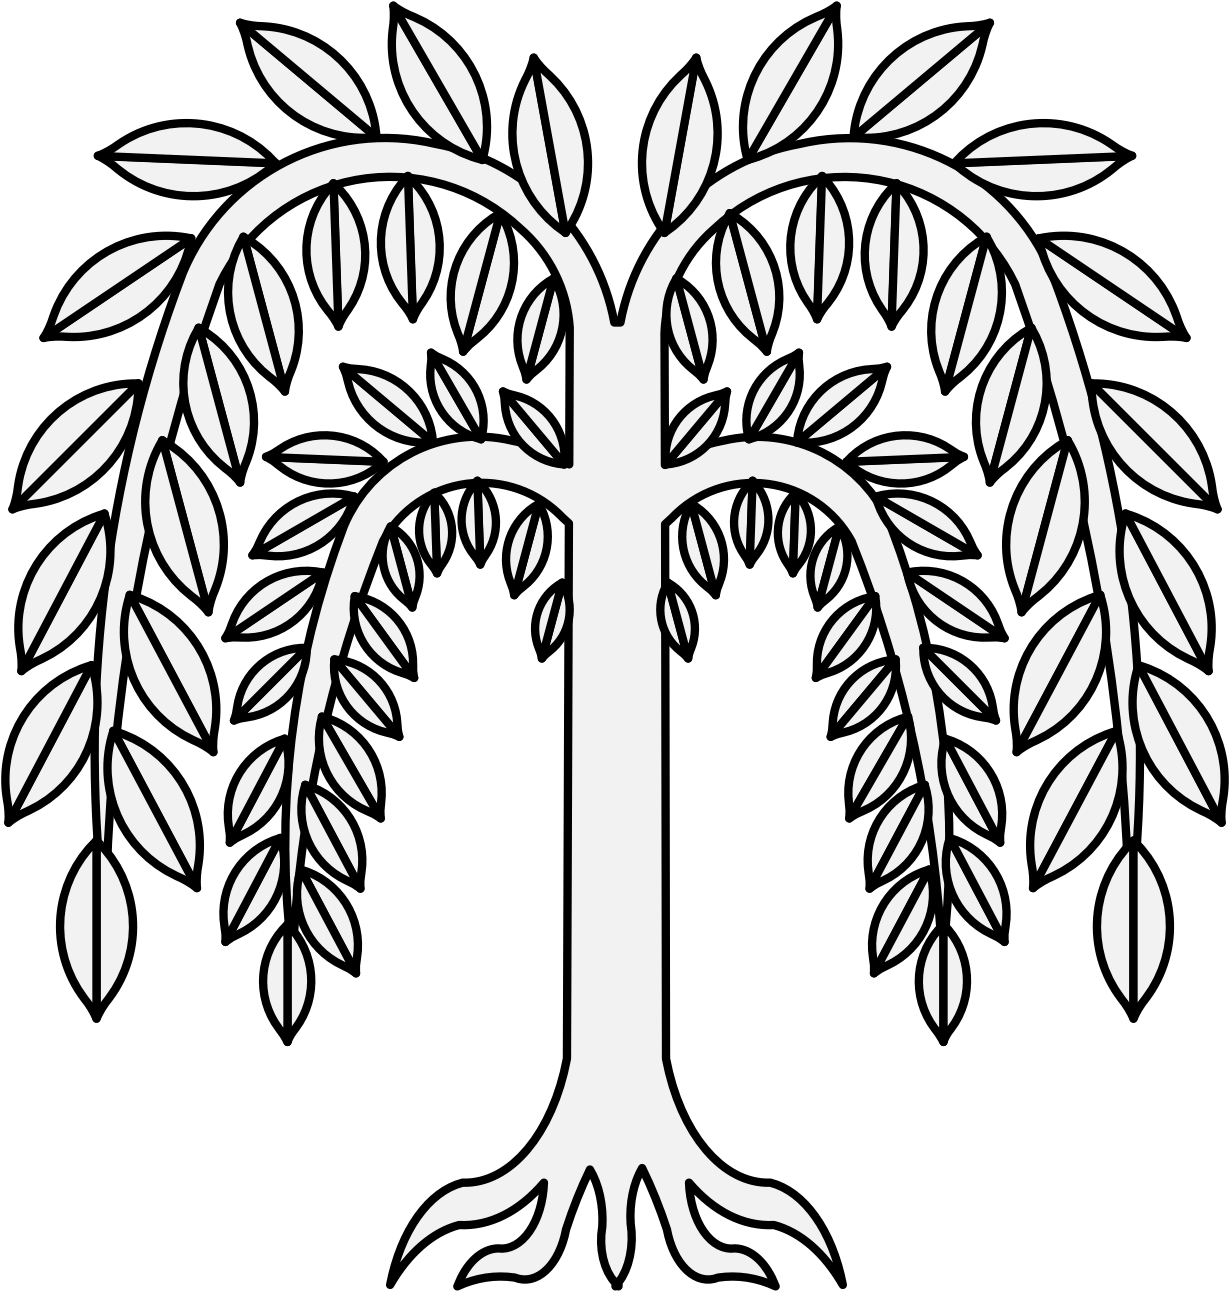 Willow - Heraldic Willow Tree (1236x1294)